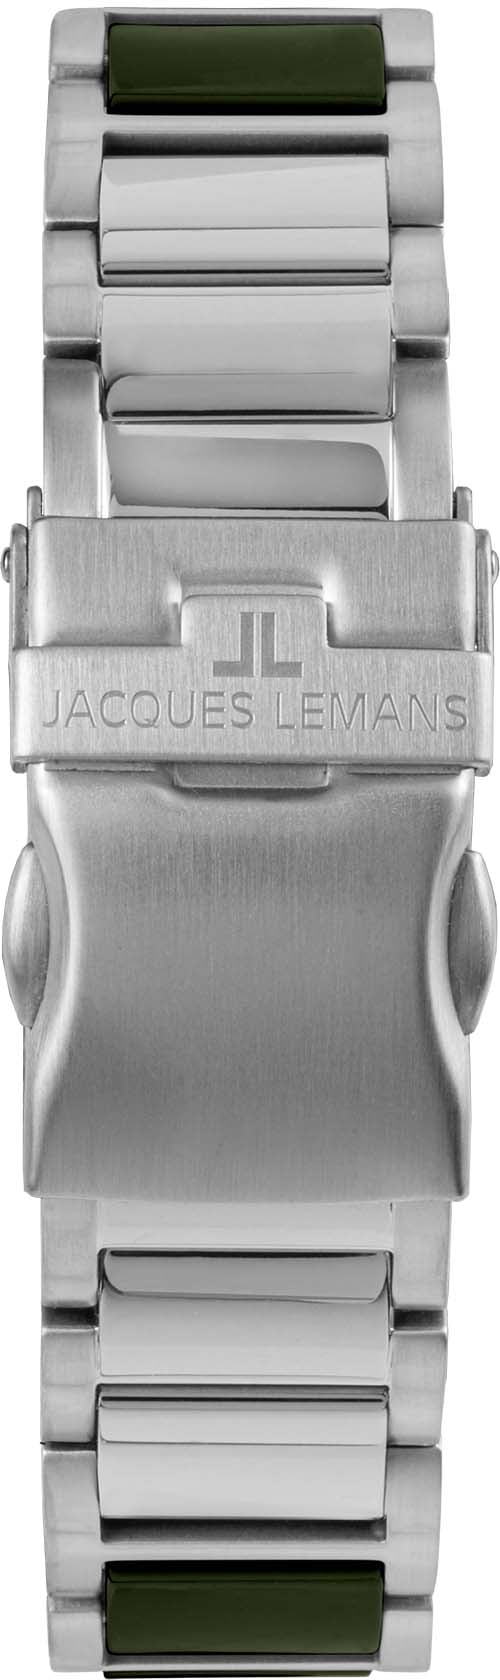 Jacques Lemans Keramikuhr »Liverpool, 42-10C« online kaufen | BAUR